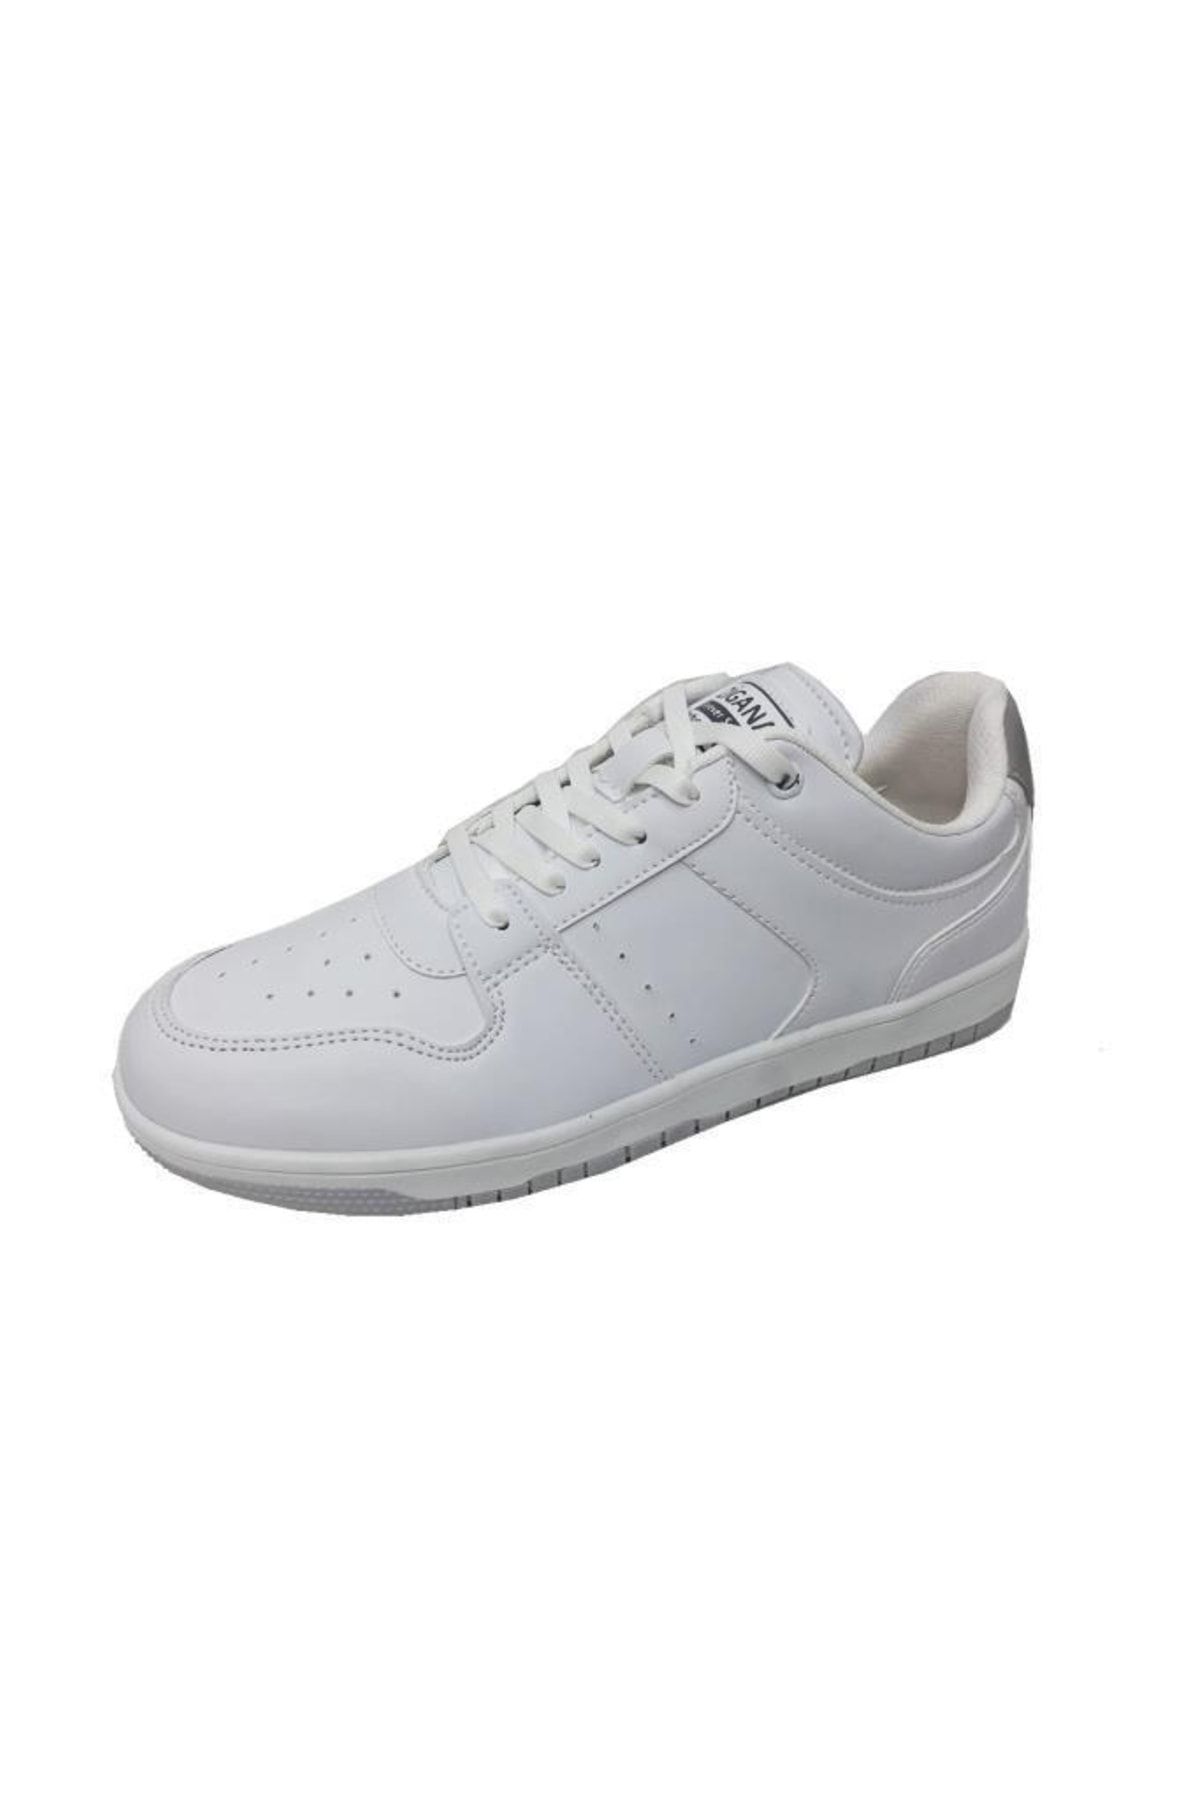 Zigana Beyaz - 2504 Deri Erkek Sneakers Ayakkabı